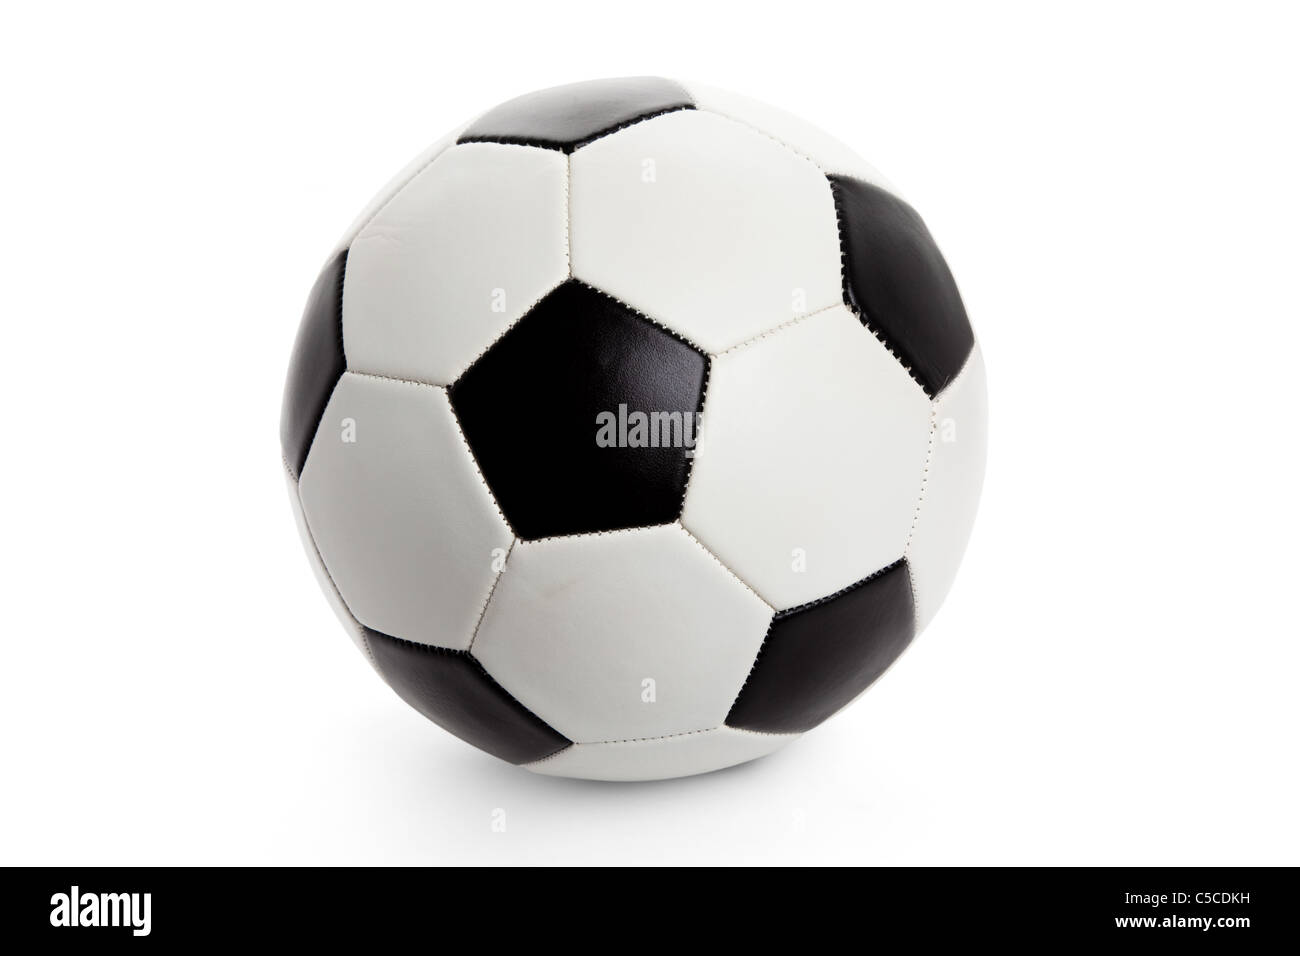 Ballon de soccer, football isolé sur fond blanc Banque D'Images